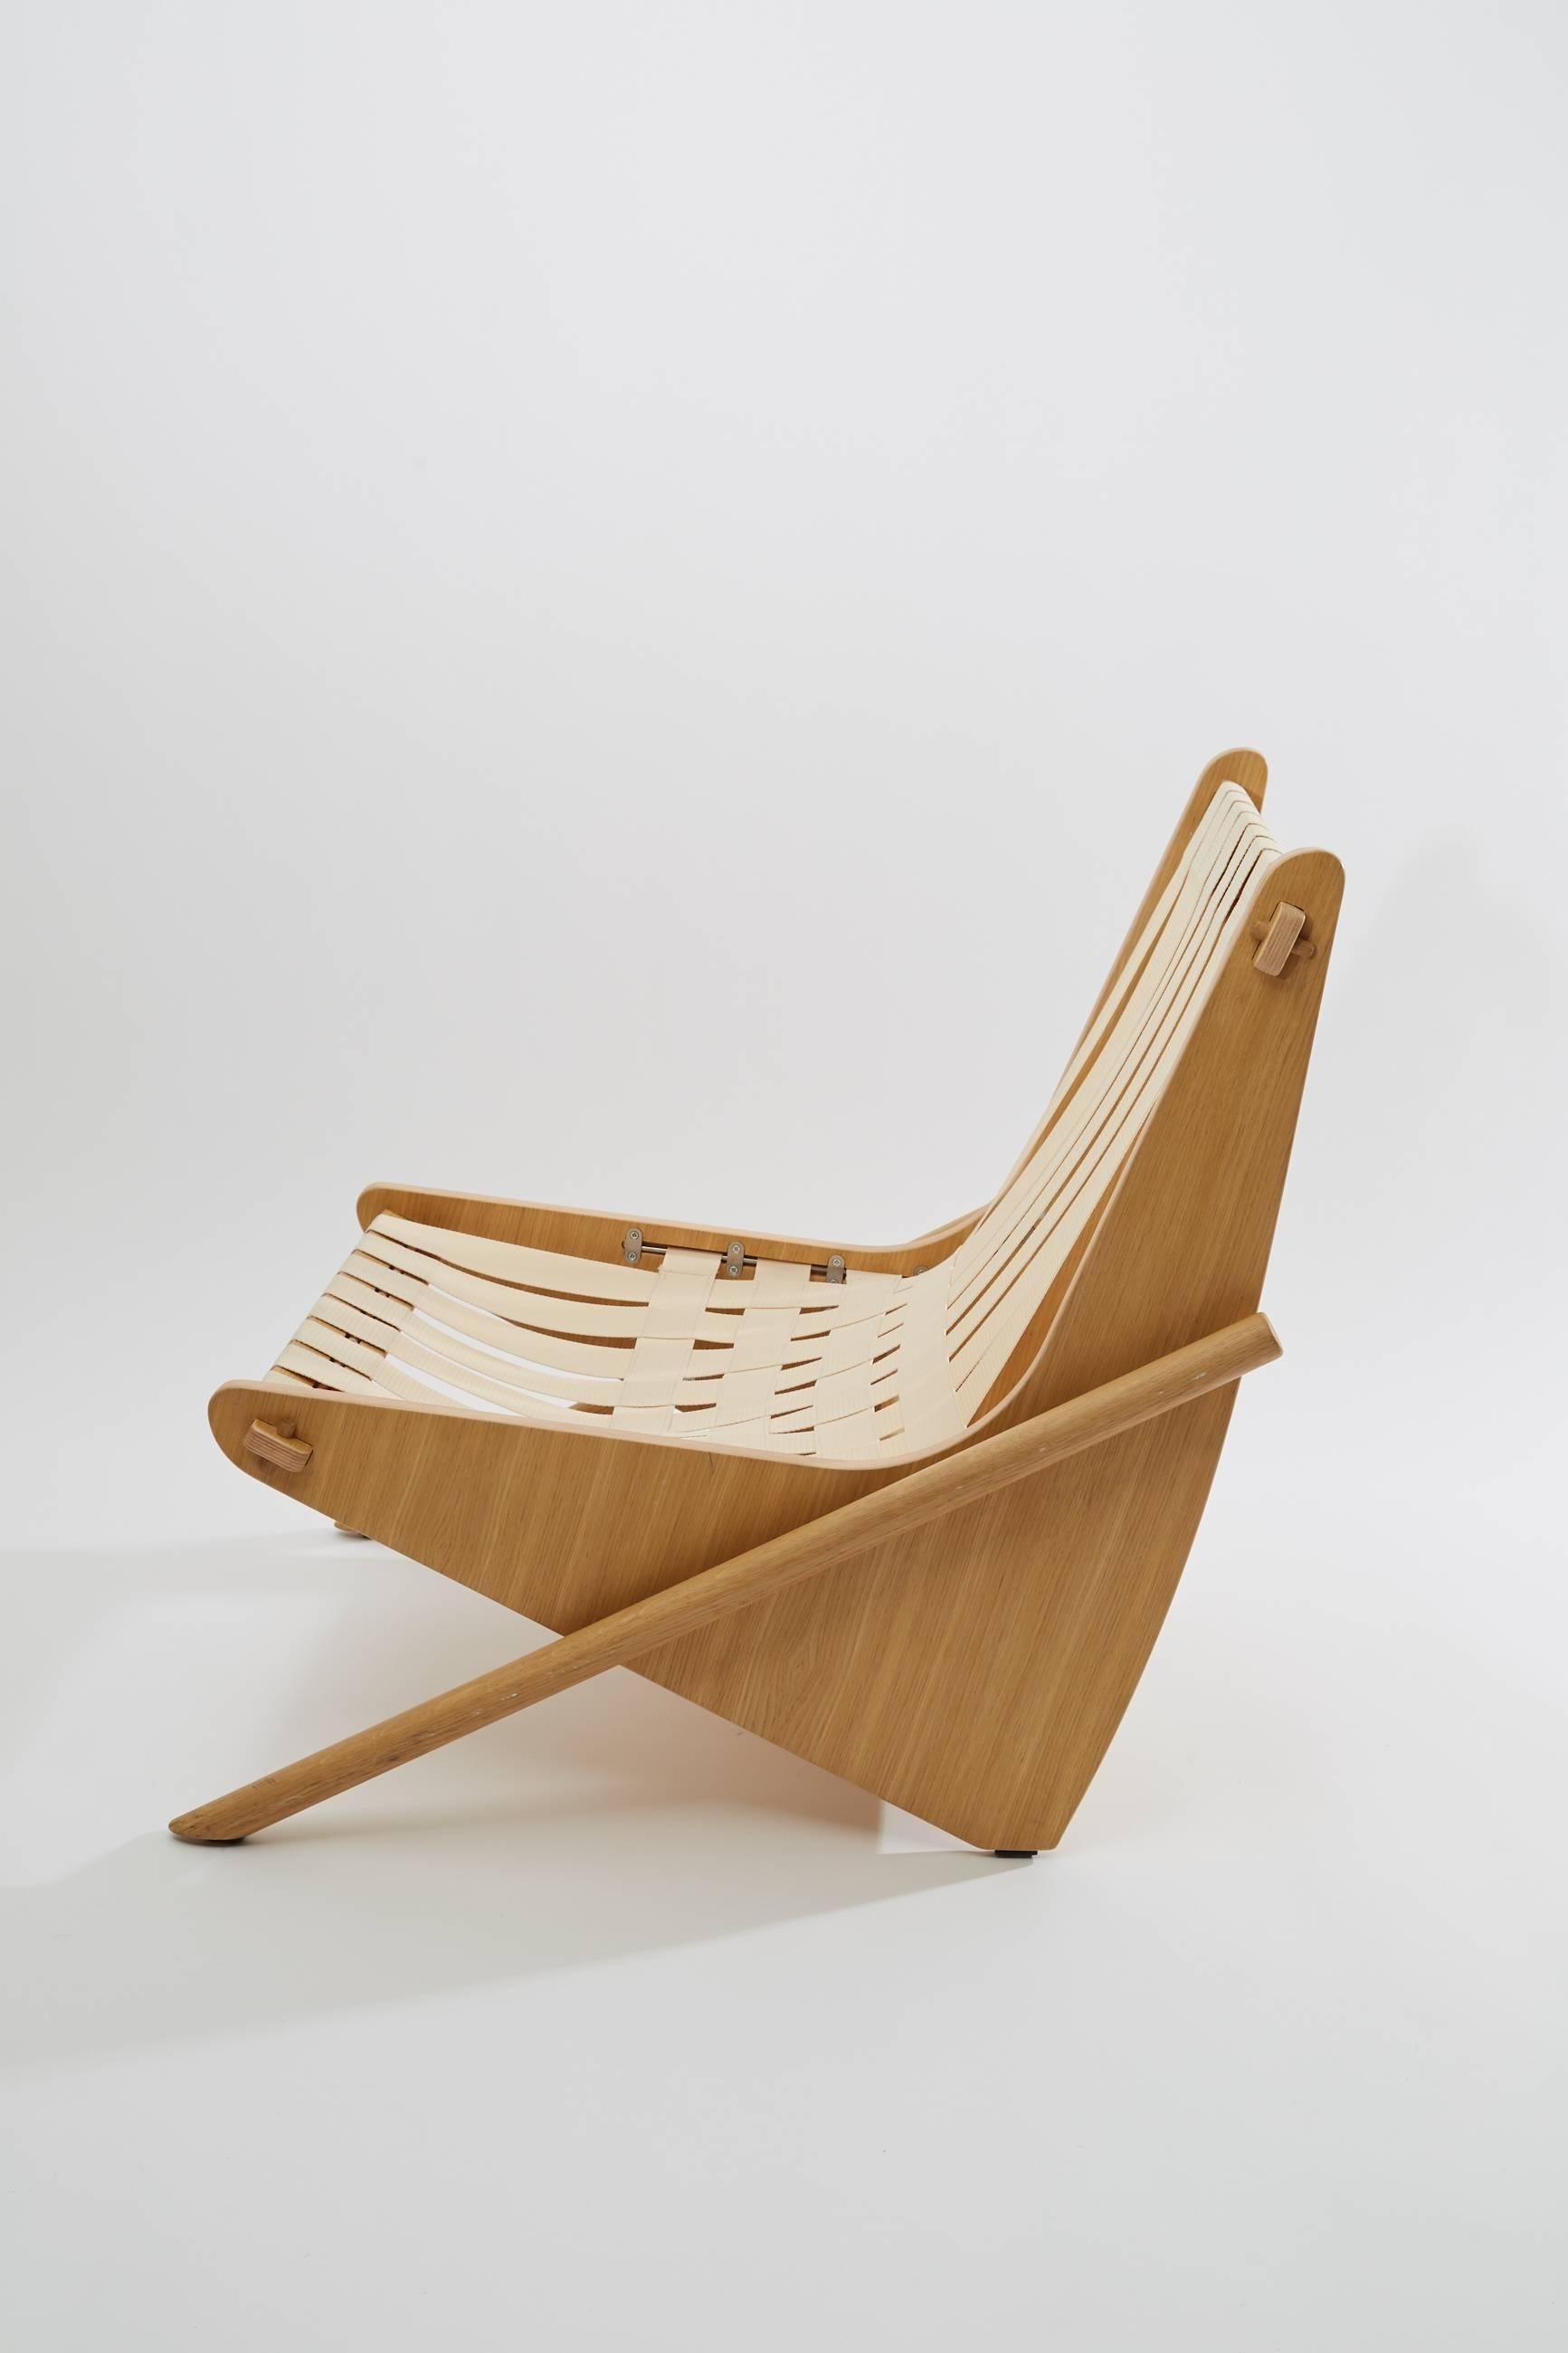 Bumerang-Stuhl von Richard Neutra aus dem Jahr 1942.

Struktur aus Sperrholz.
Sitz und Rückenlehne aus Yarn.
Inklusive schwarzer Sitz- und Rückenkissen. Farbe auf Anfrage.

In den frühen 1940er Jahren entwarf Richard Neutra schöne, funktionale